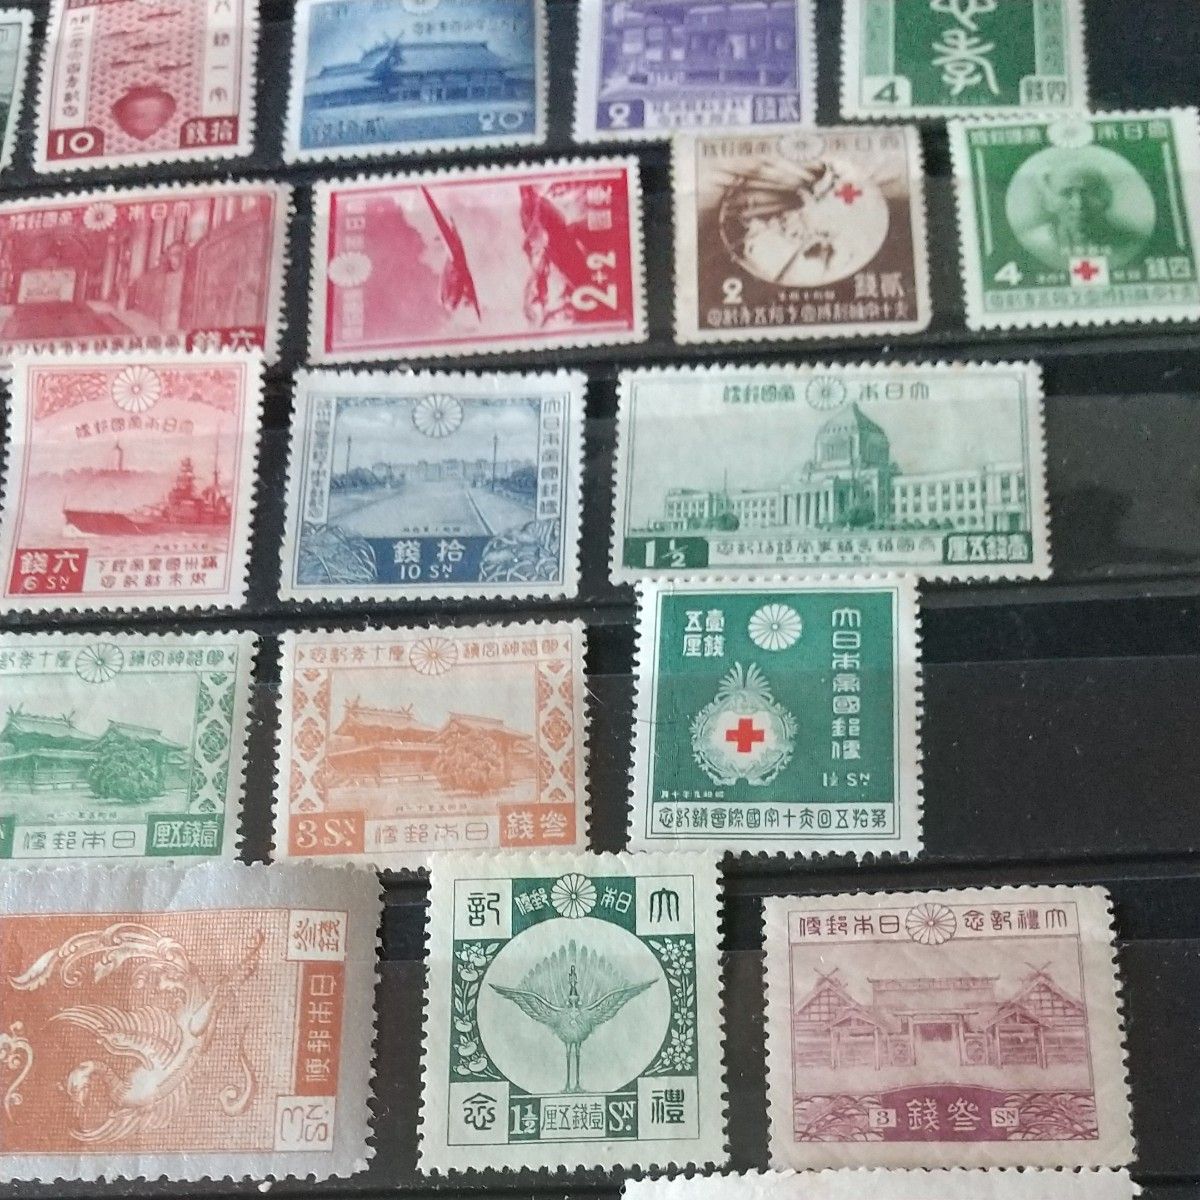 (大ボリューム) 戦前 大正~昭和記念切手いろいろ45種セット